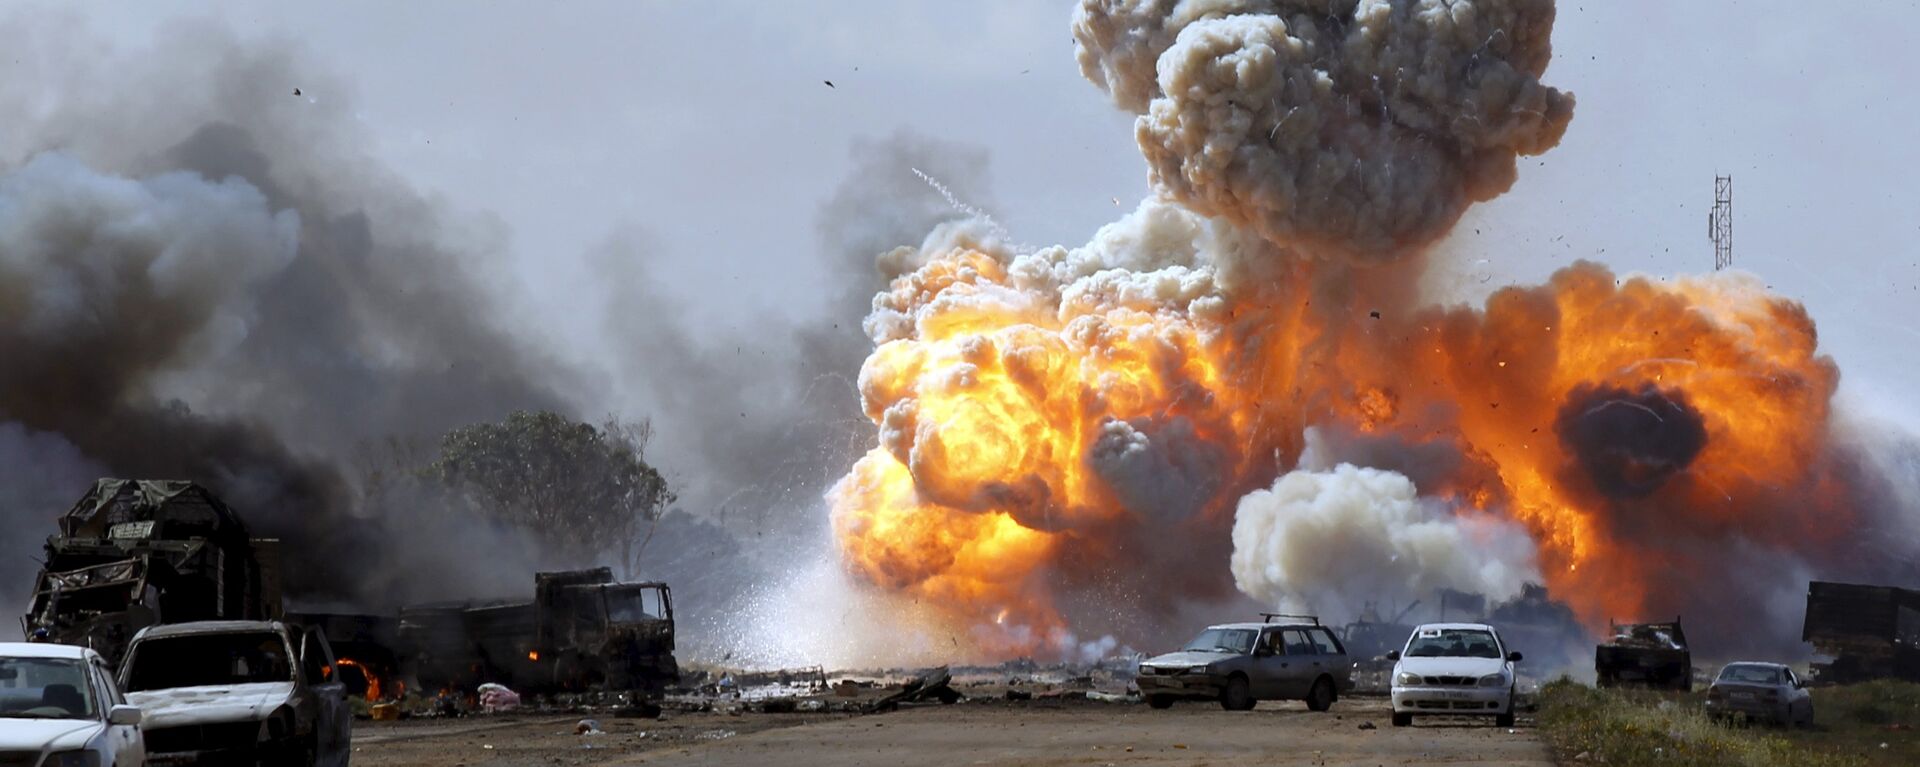 Bombardeos de la coalición en Libia en 2011 - Sputnik Mundo, 1920, 19.03.2021